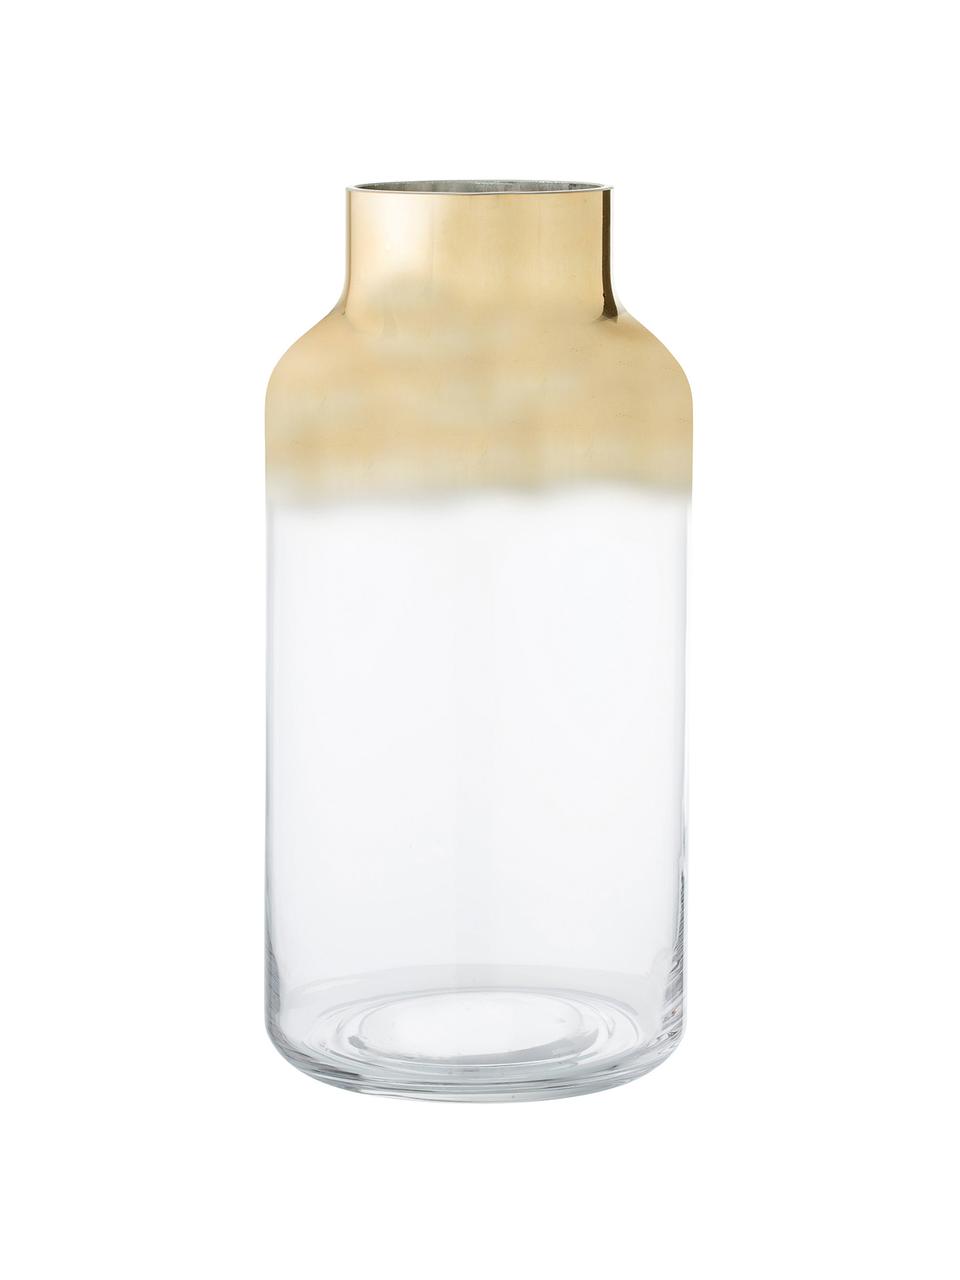 Mundgeblasene Vase Julie, Glas, Goldfarben, Transparent, Ø 16 x H 35 cm